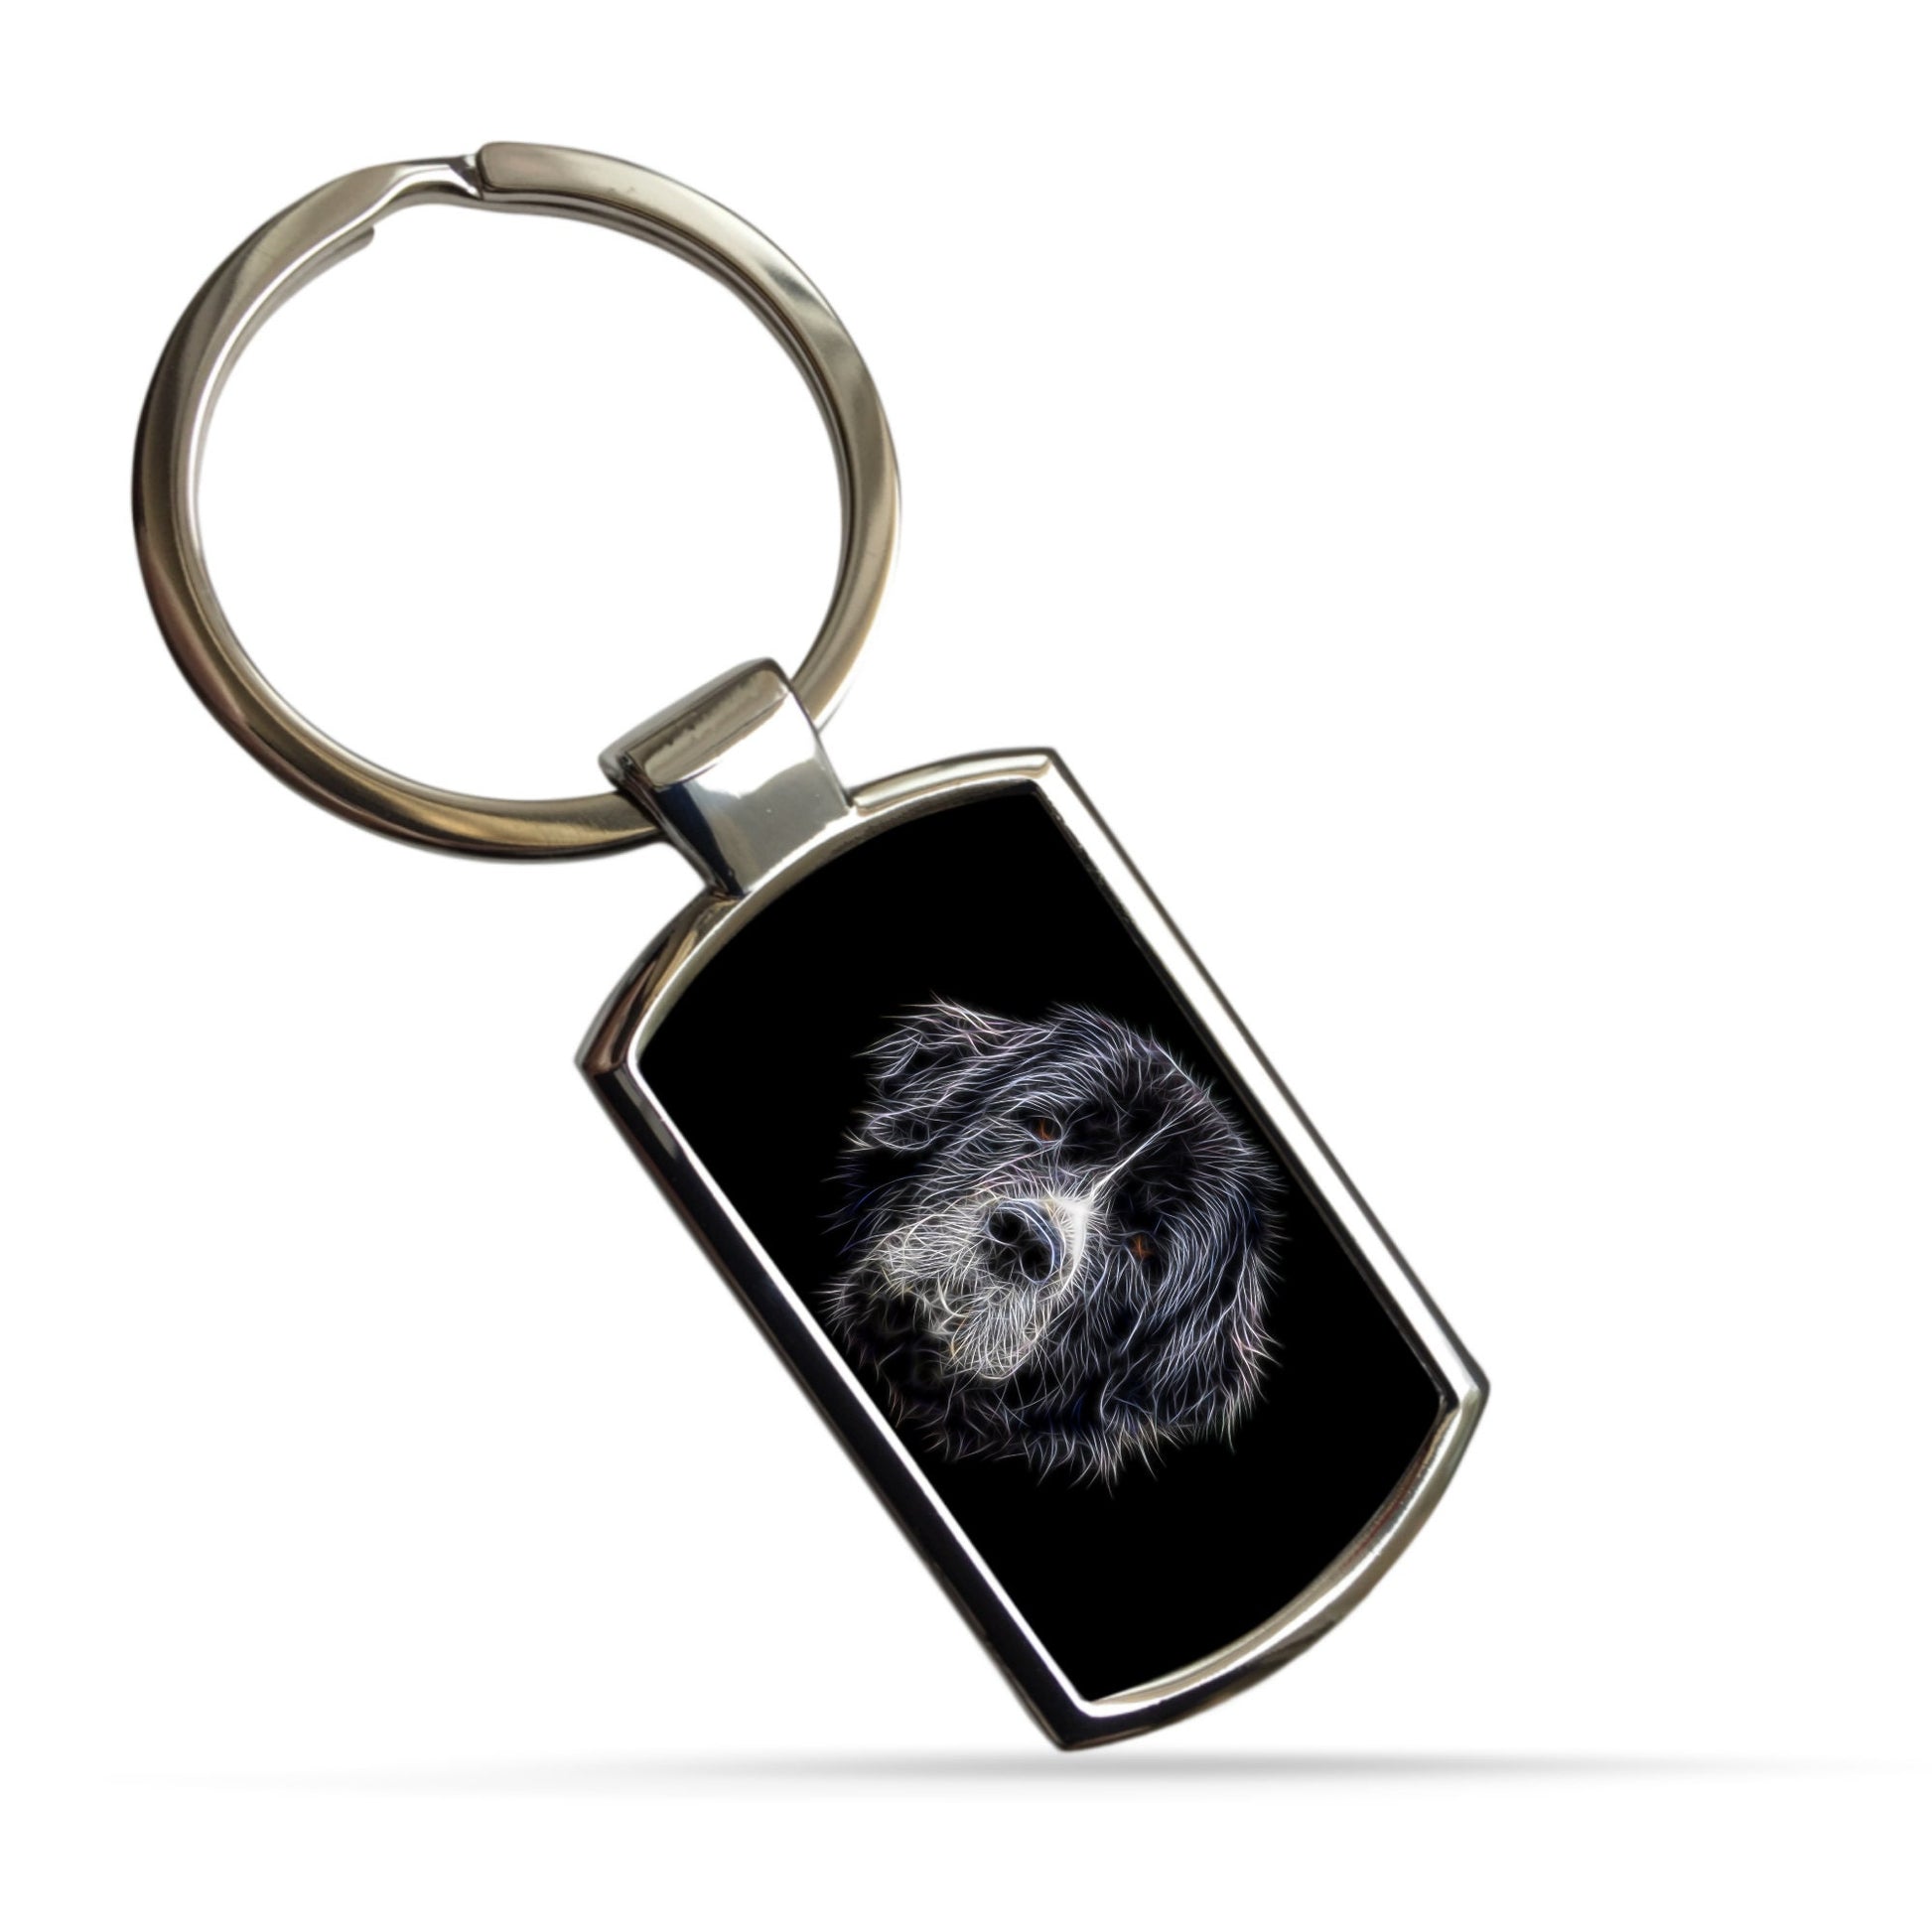 Landseer Newfoundland Dog Keychain with Fractal Art Design